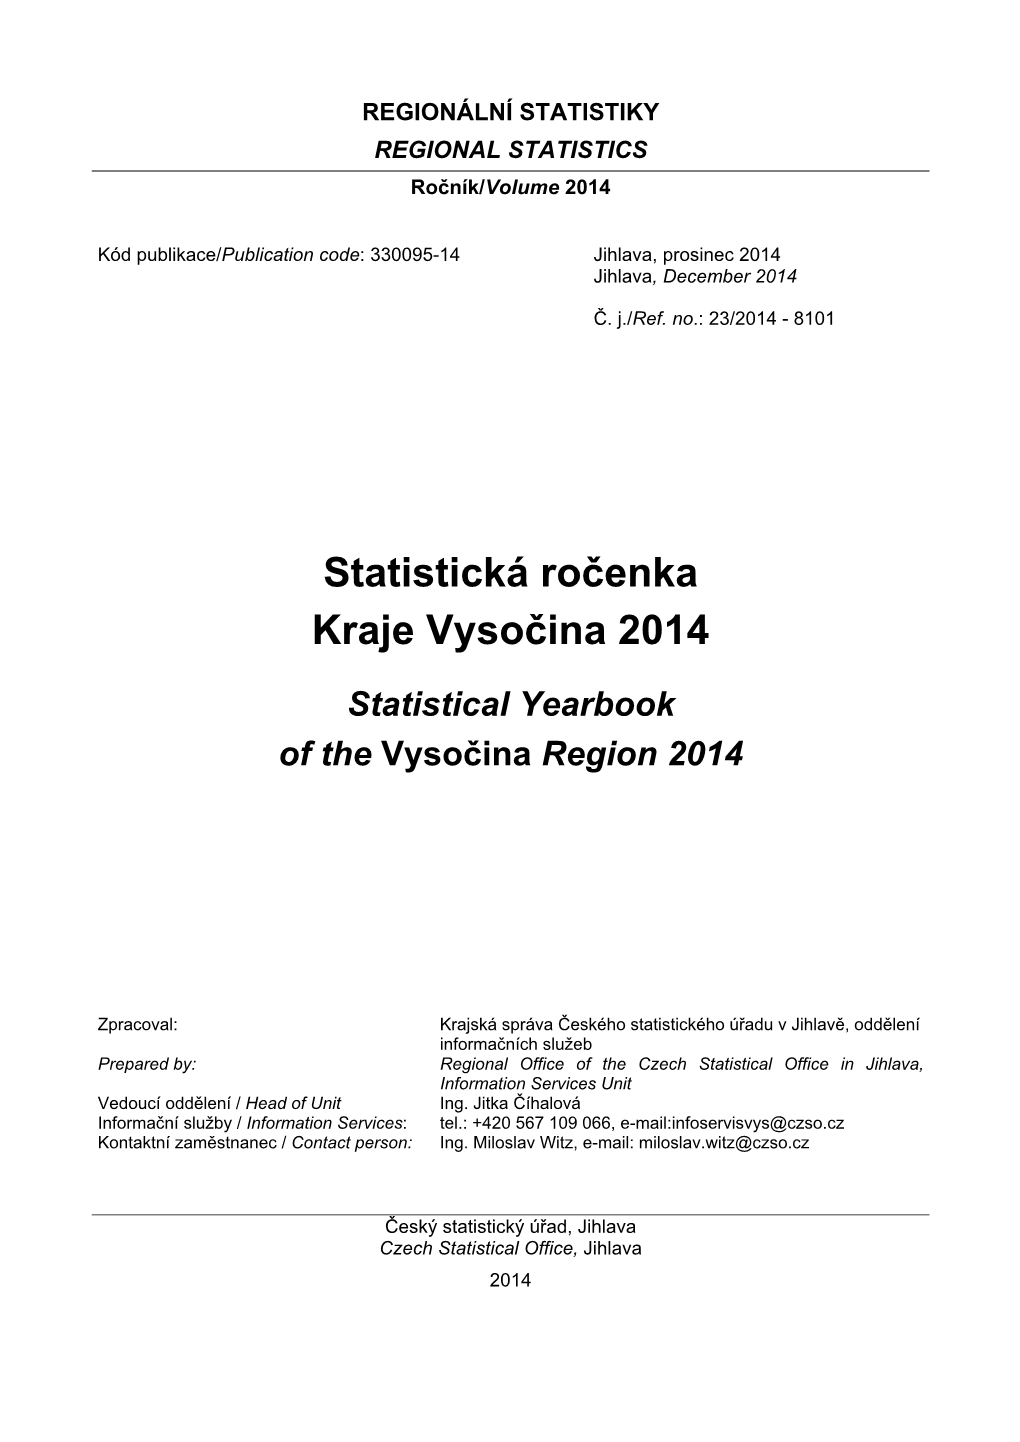 Statistická Ročenka Kraje Vysočina 2014